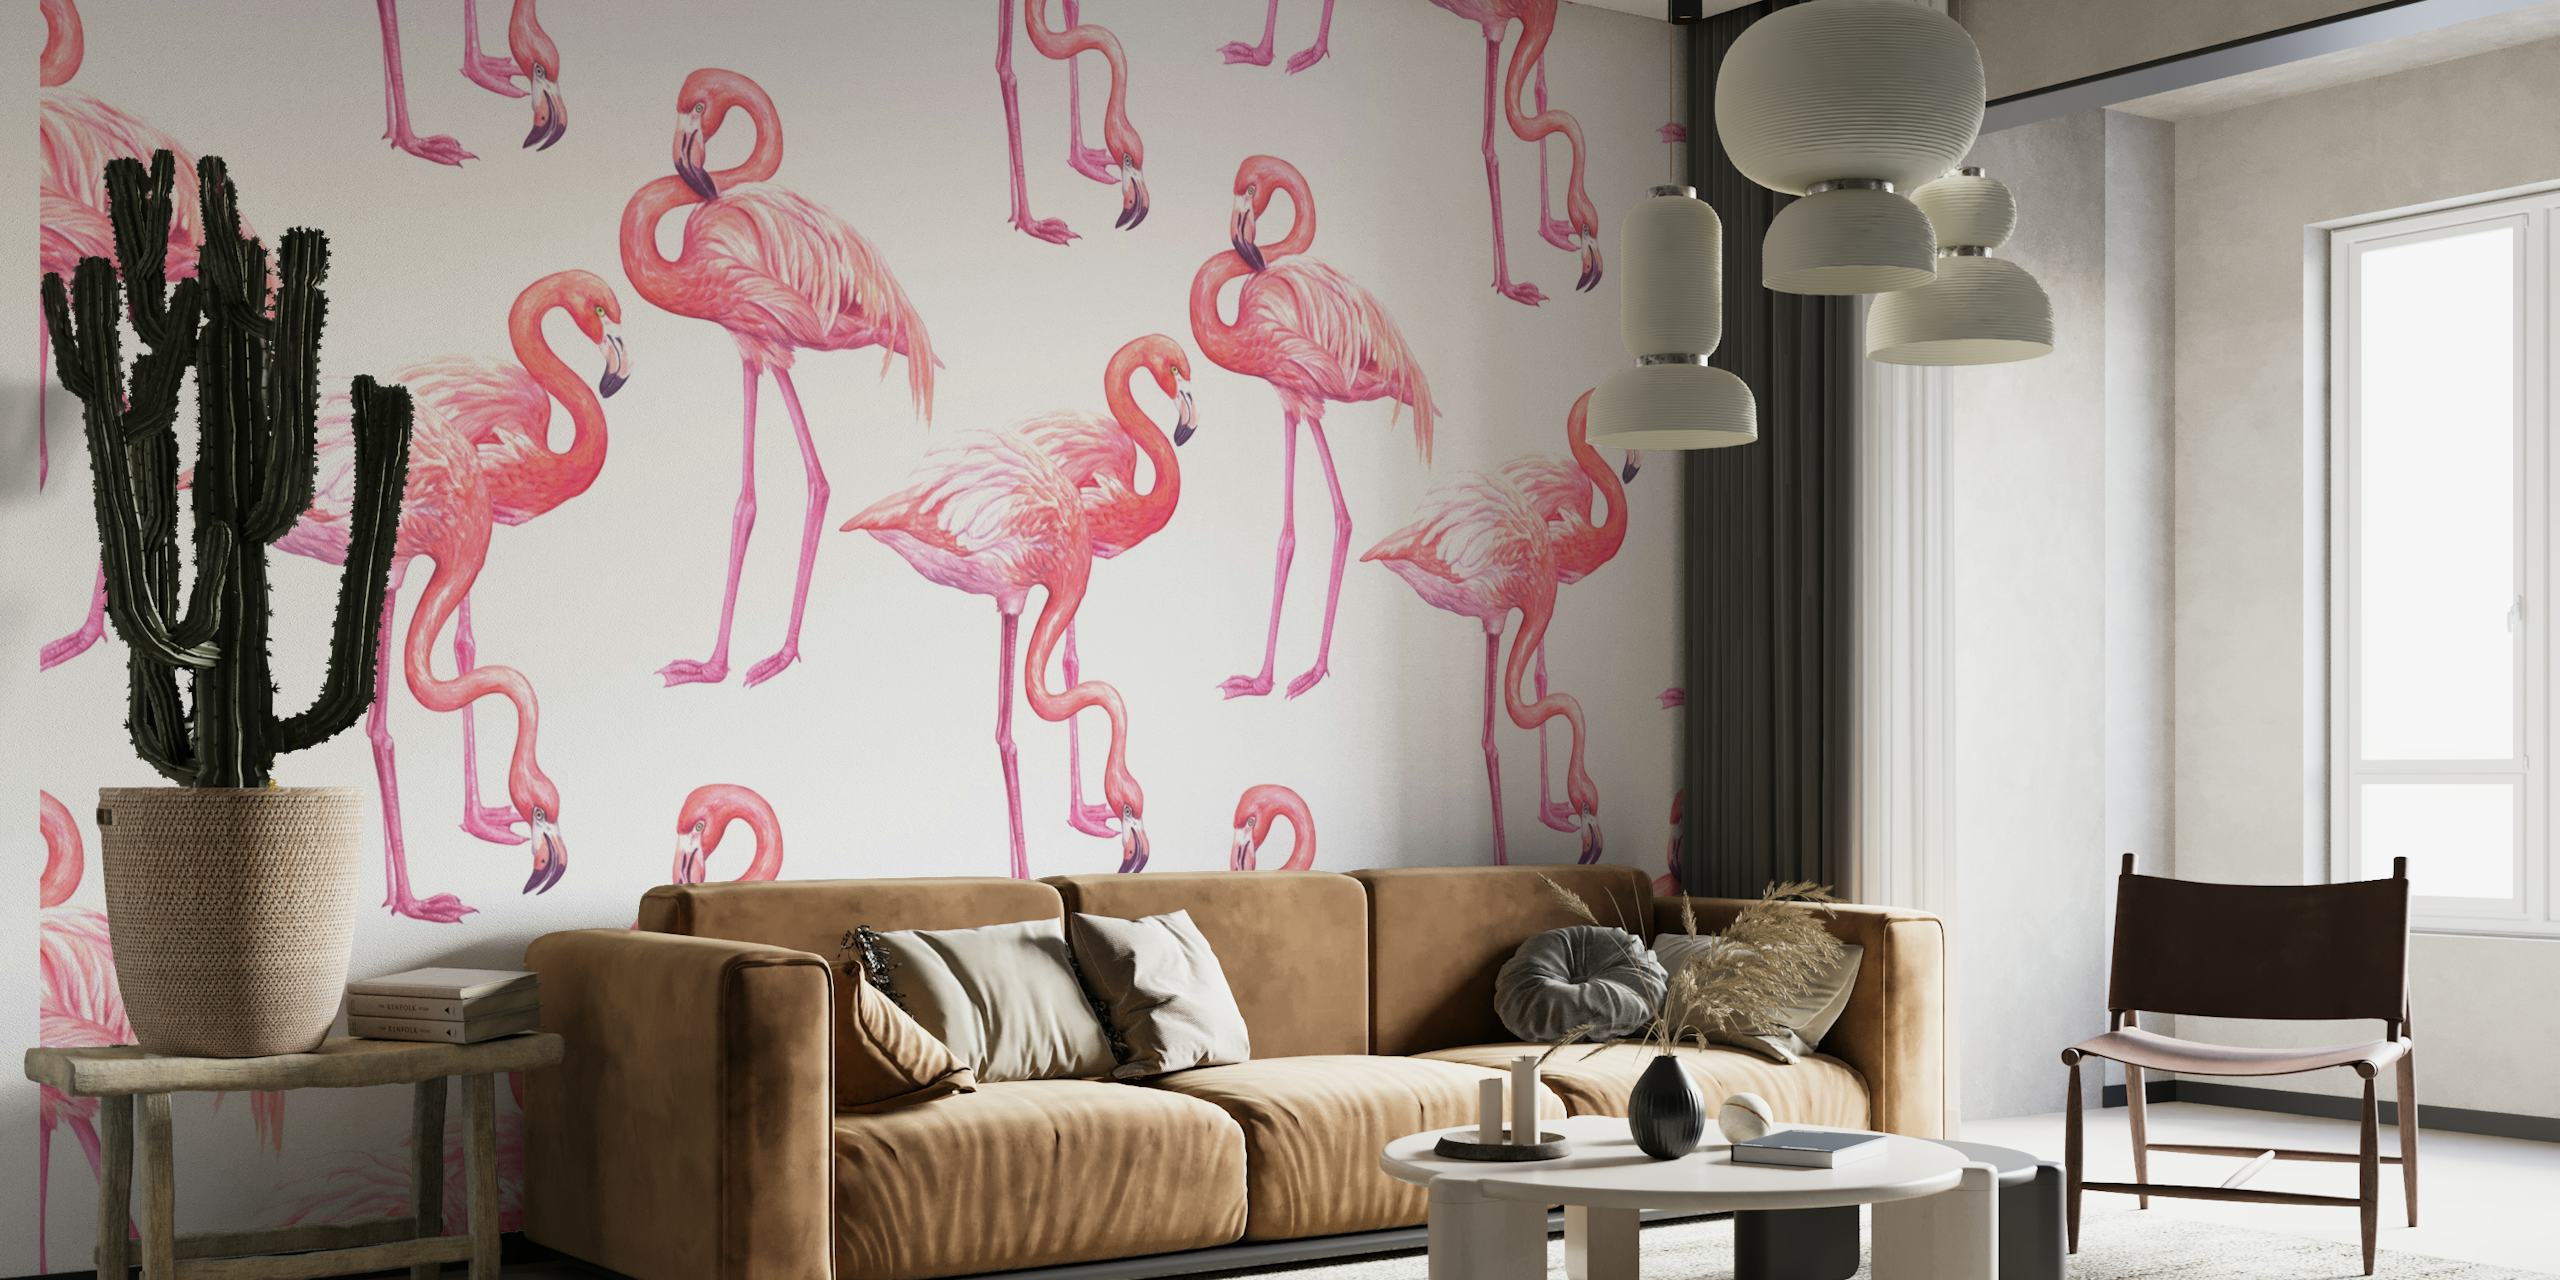 Flamingos elegantes em rosa em um fotomural vinílico de fundo branco